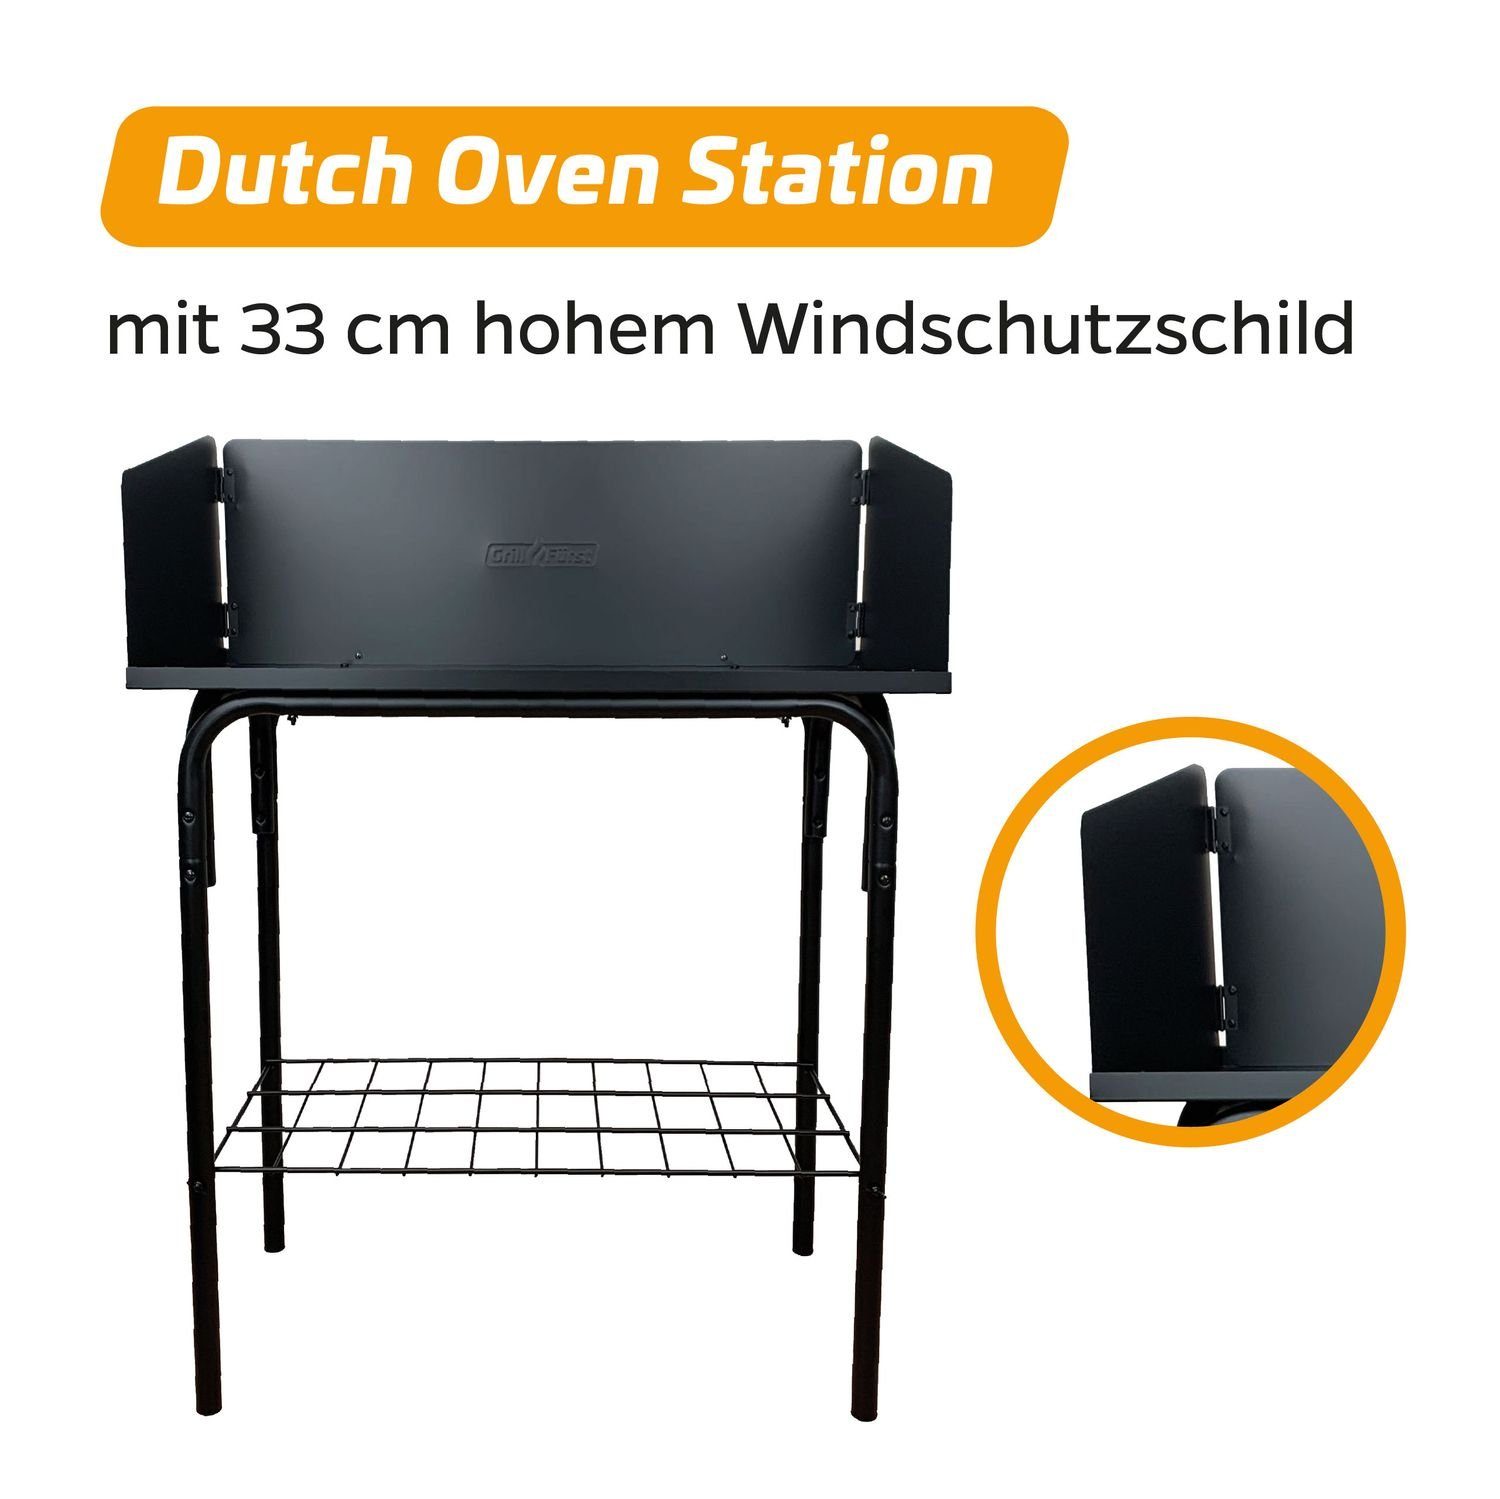 Windschild Dutch Grillfürst Grillfürst mit Tisch Station Oven / Feuertisch Oven Dutch